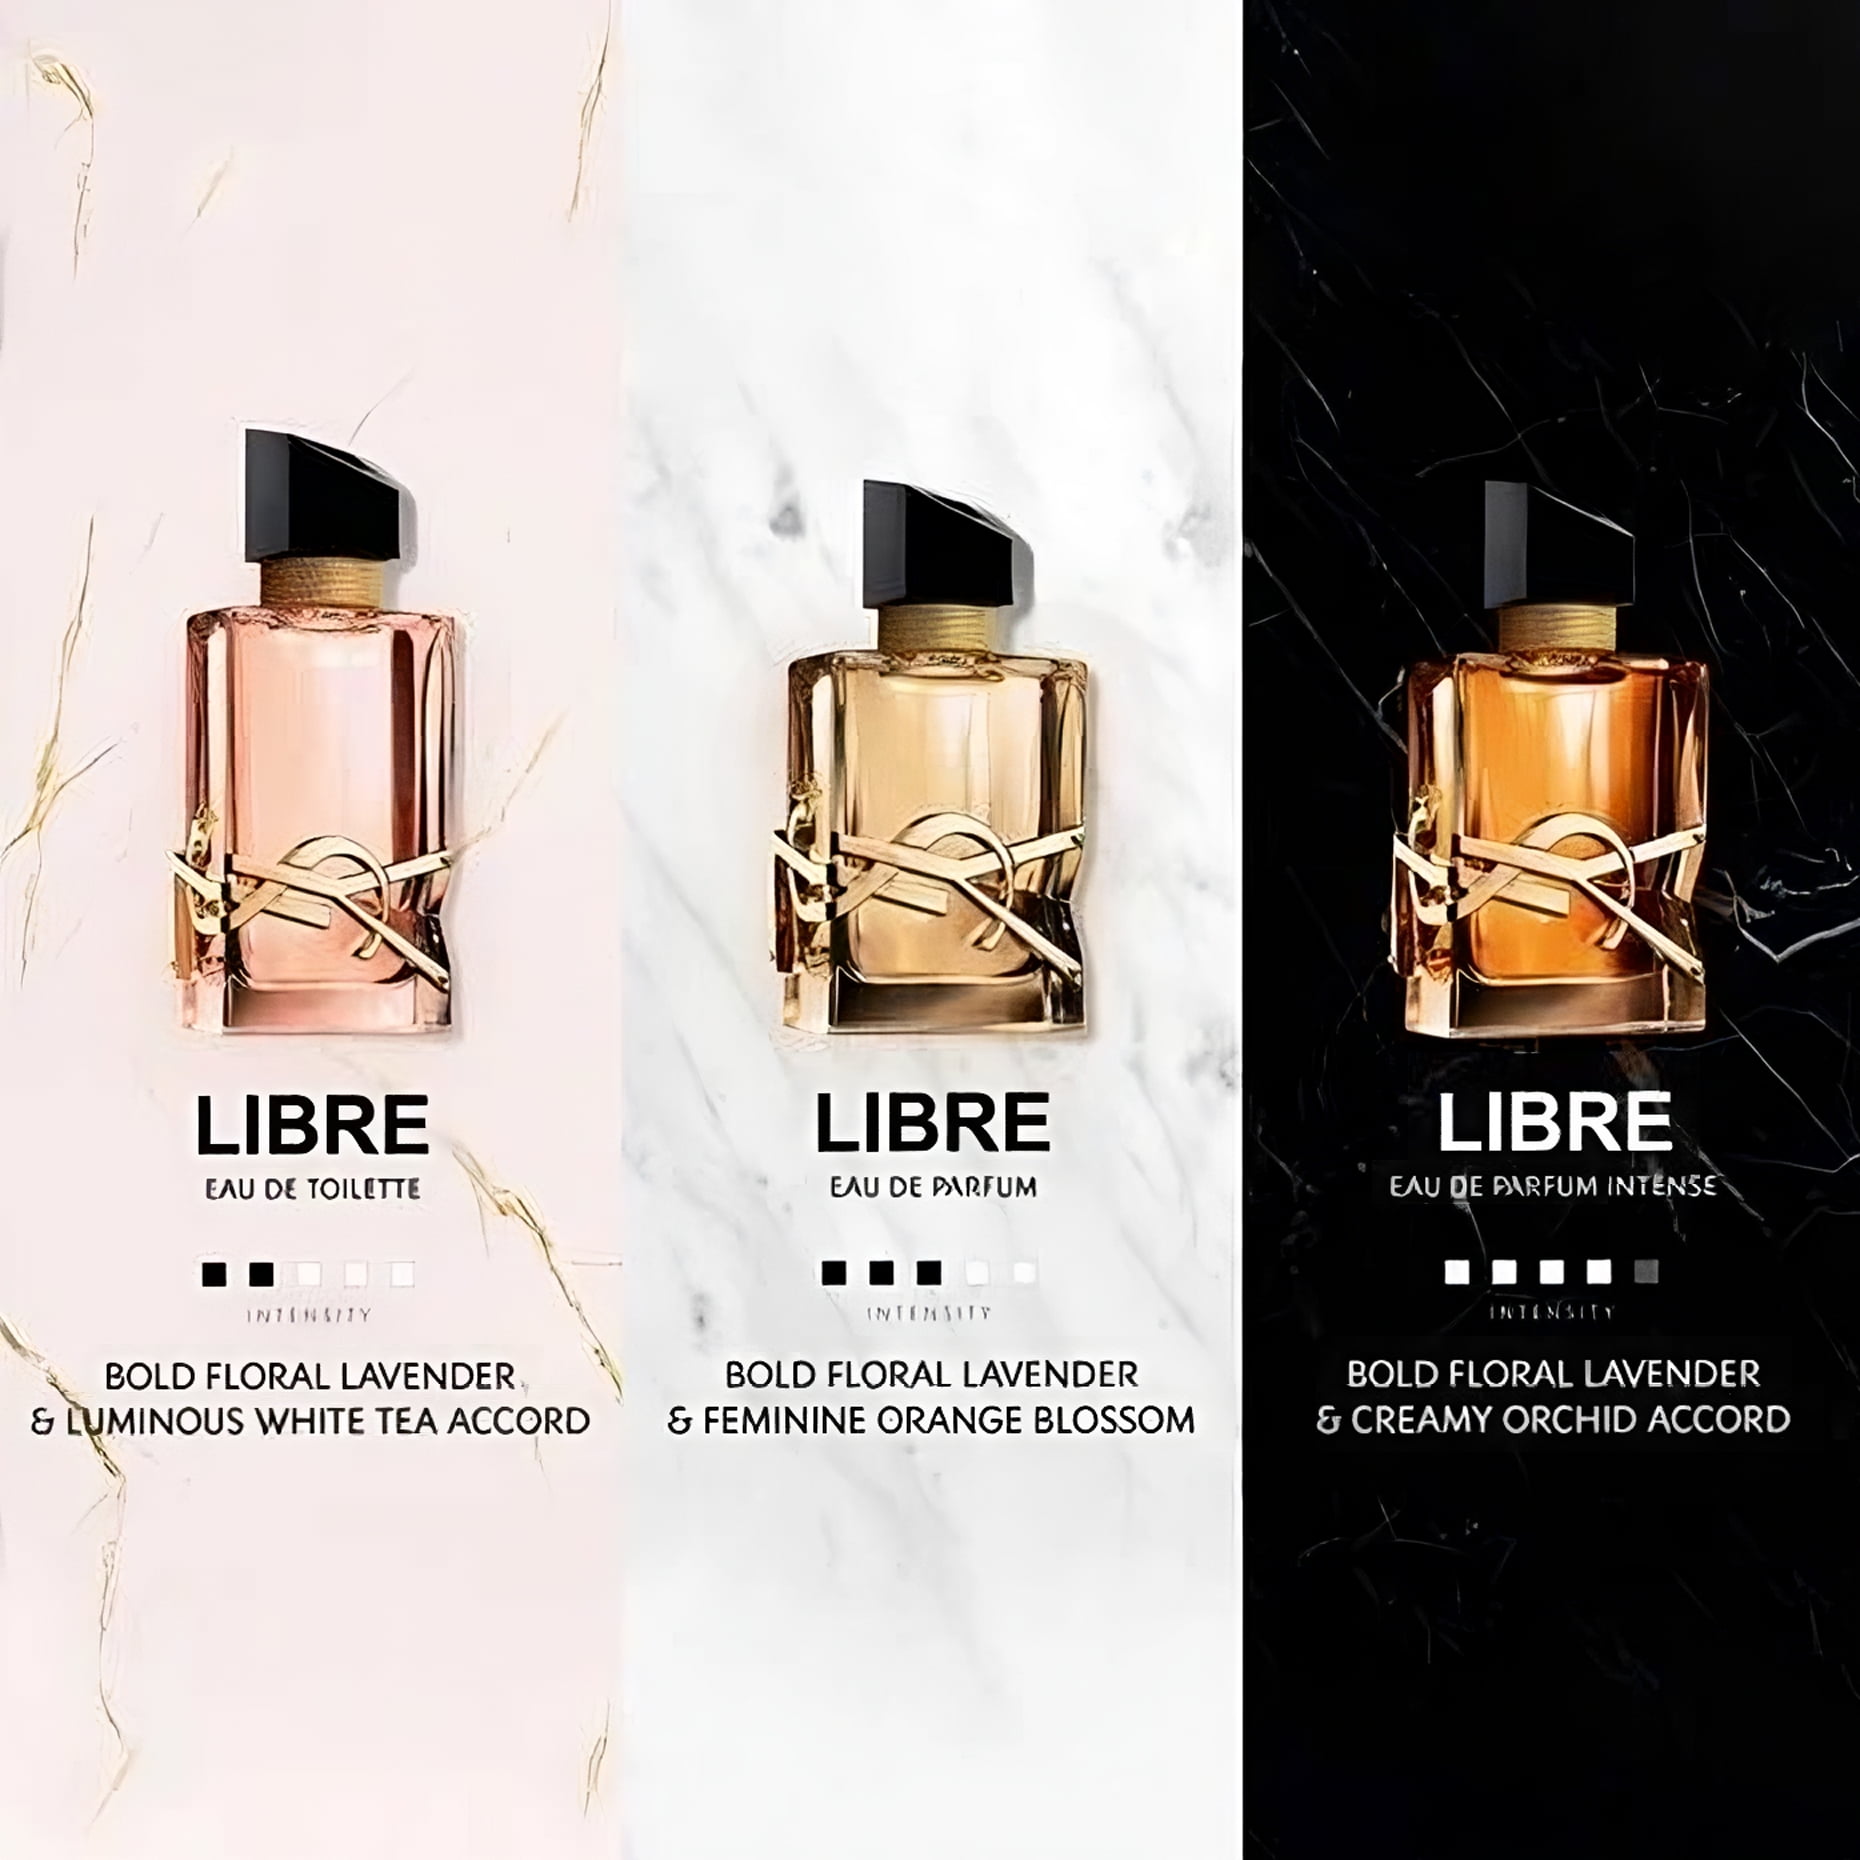  Yves Saint Laurent Libre Le Parfum for Women - 3 oz Parfum  Spray : Beauty & Personal Care